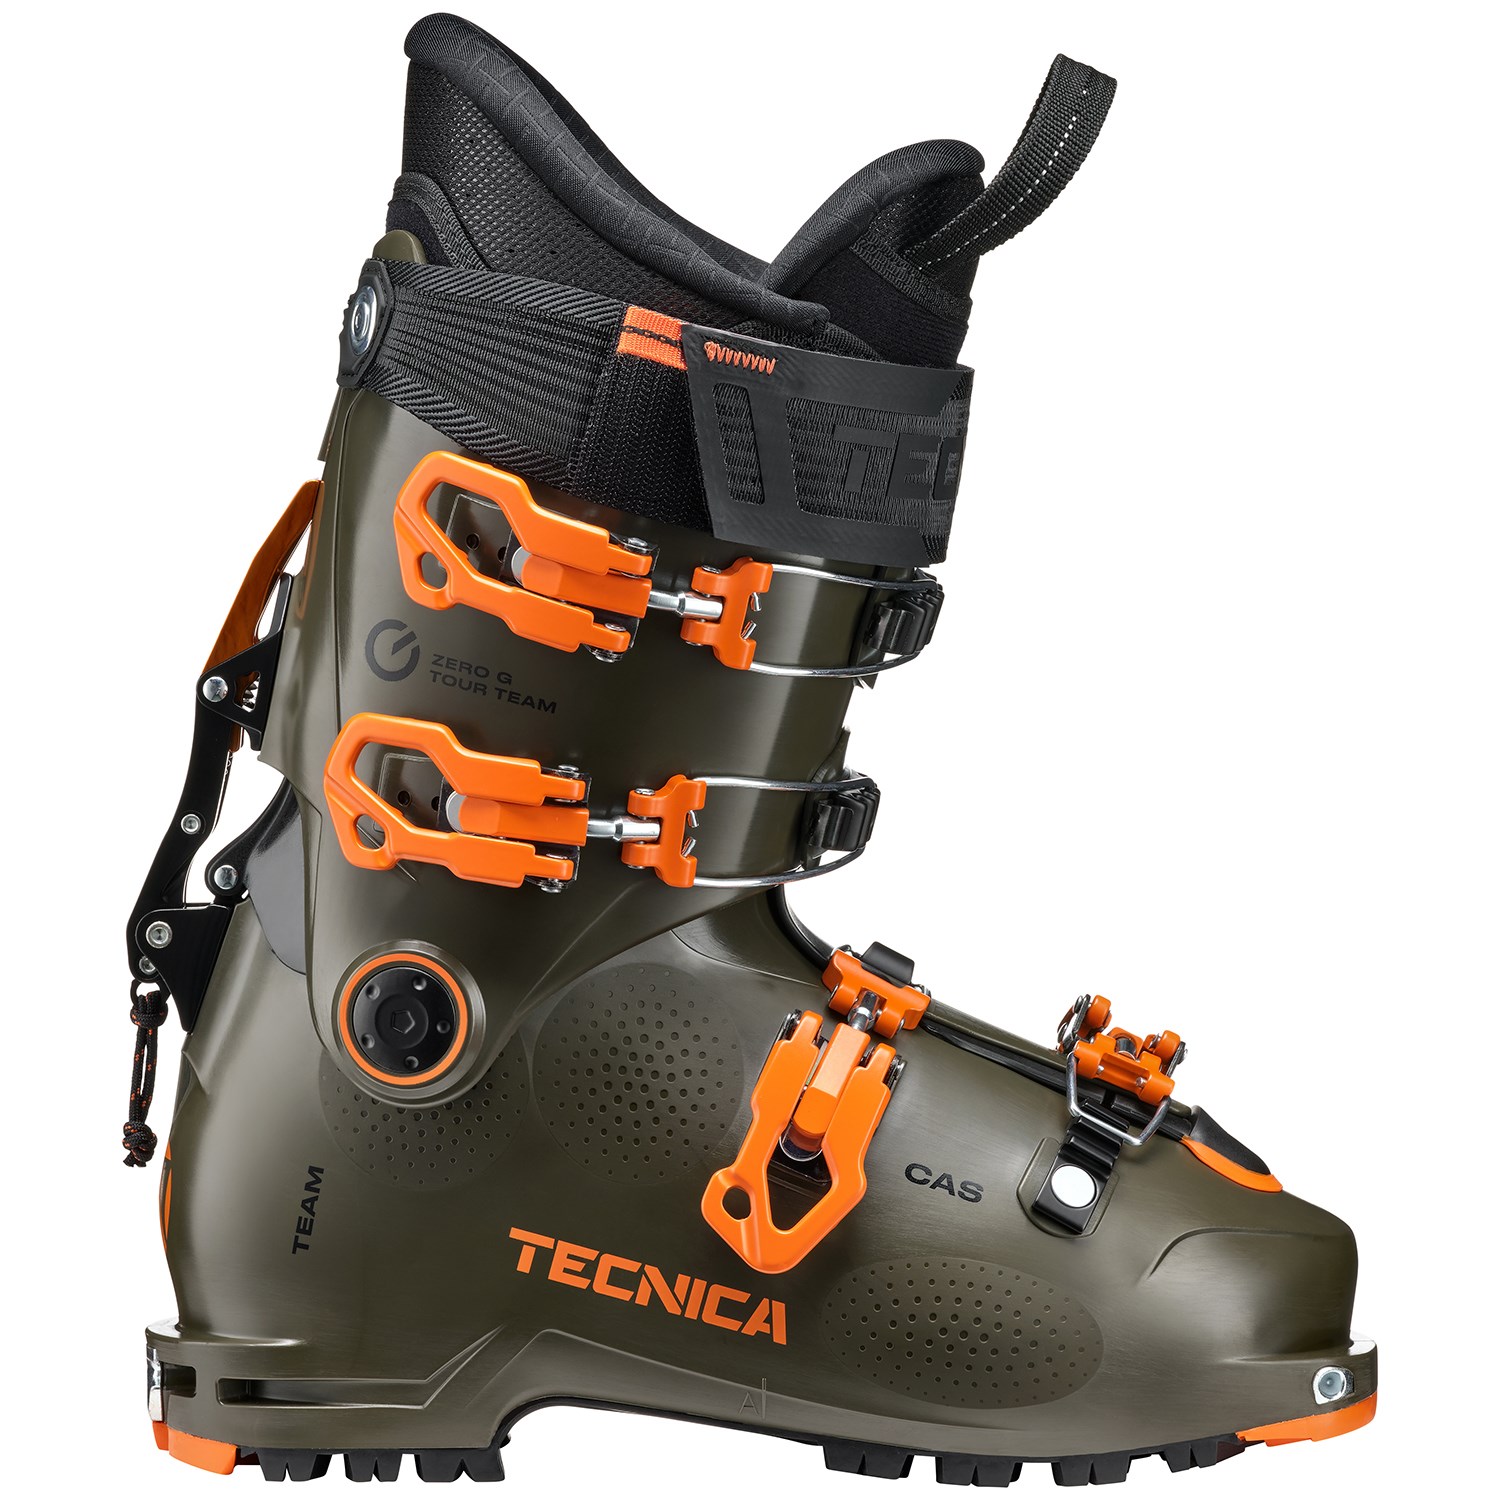 Ботинки Tecnica Zero G Team лыжные, tundra